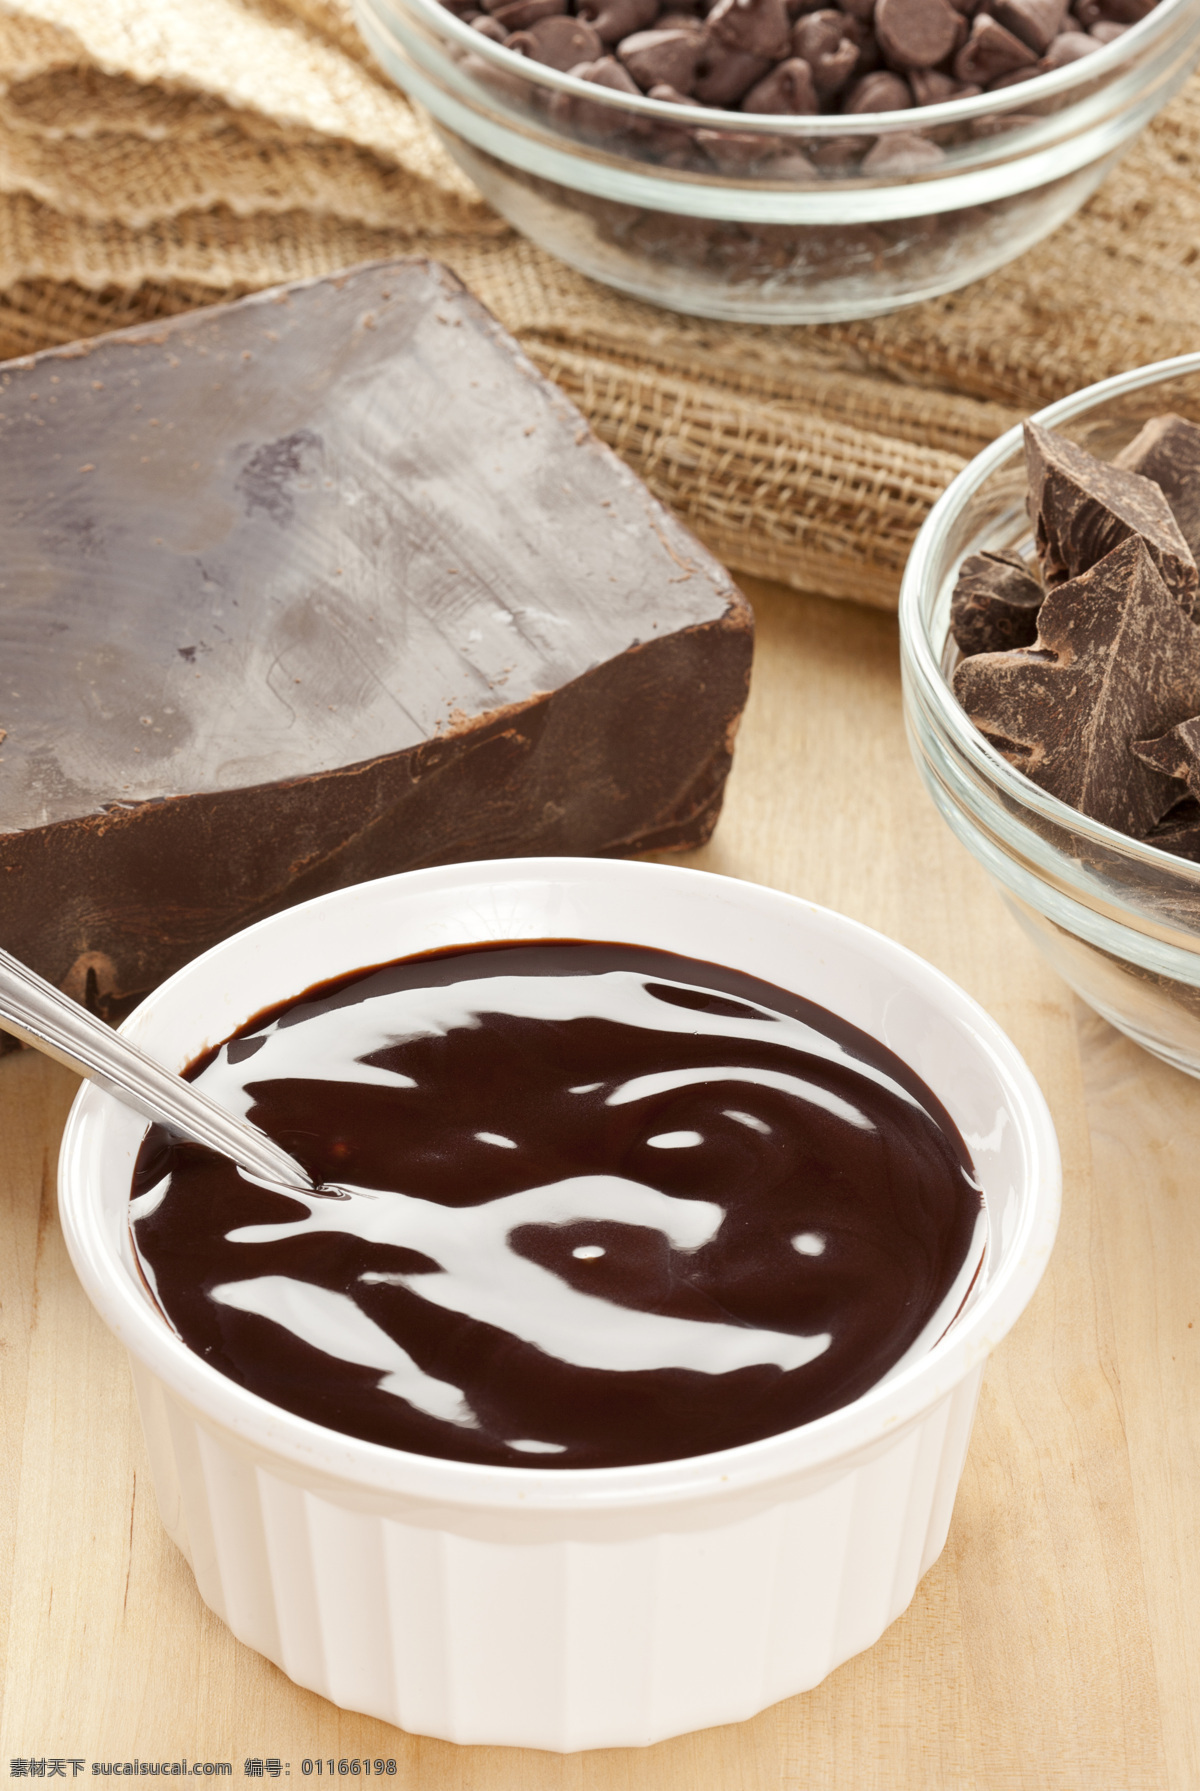 巧克力 巧克力酱 丝滑 美食 食品 朱古力 诱人的巧克力 情人节美食 咖啡 西餐美食 餐饮美食 生活百科